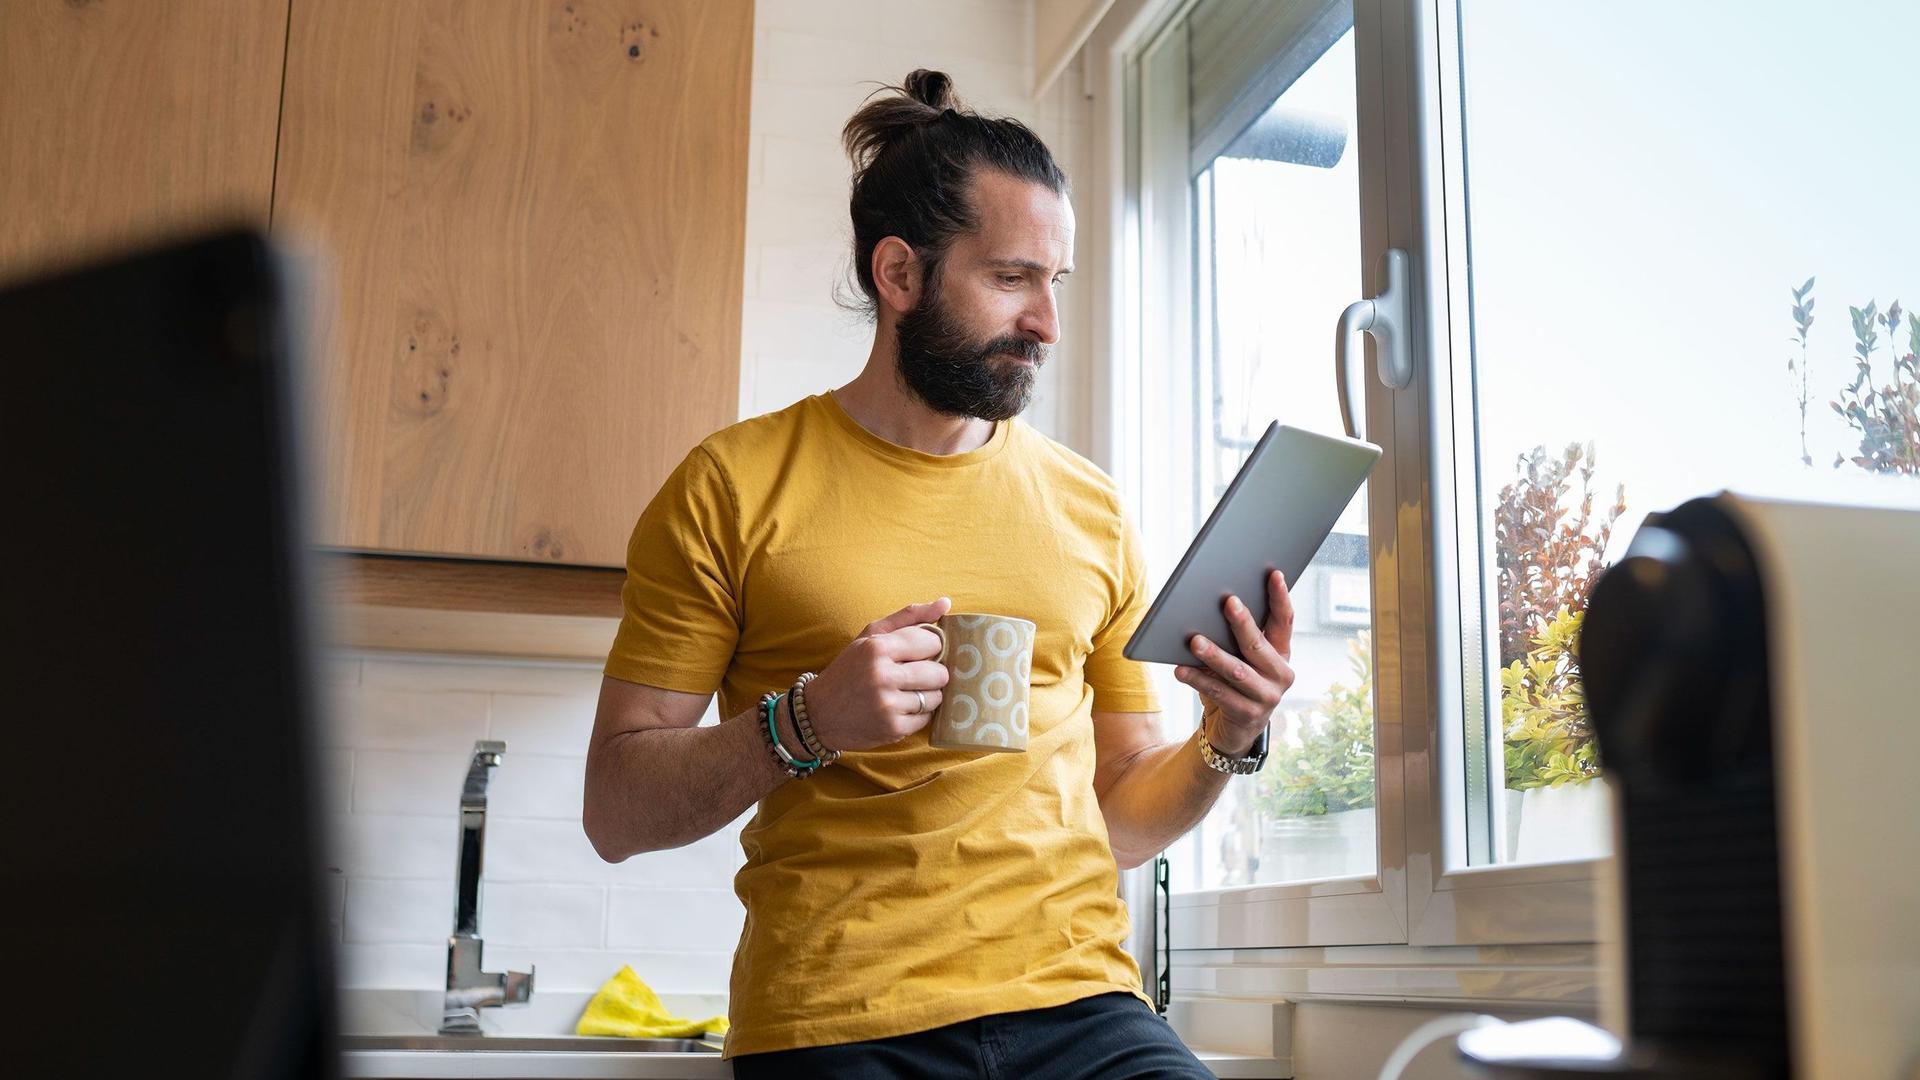 Ein junger Mann lehnt mit einem Kaffeebecher an einer Küchenzeile neben dem Fenster. Er schaut konzentriert auf ein Tablet in seiner Hand.